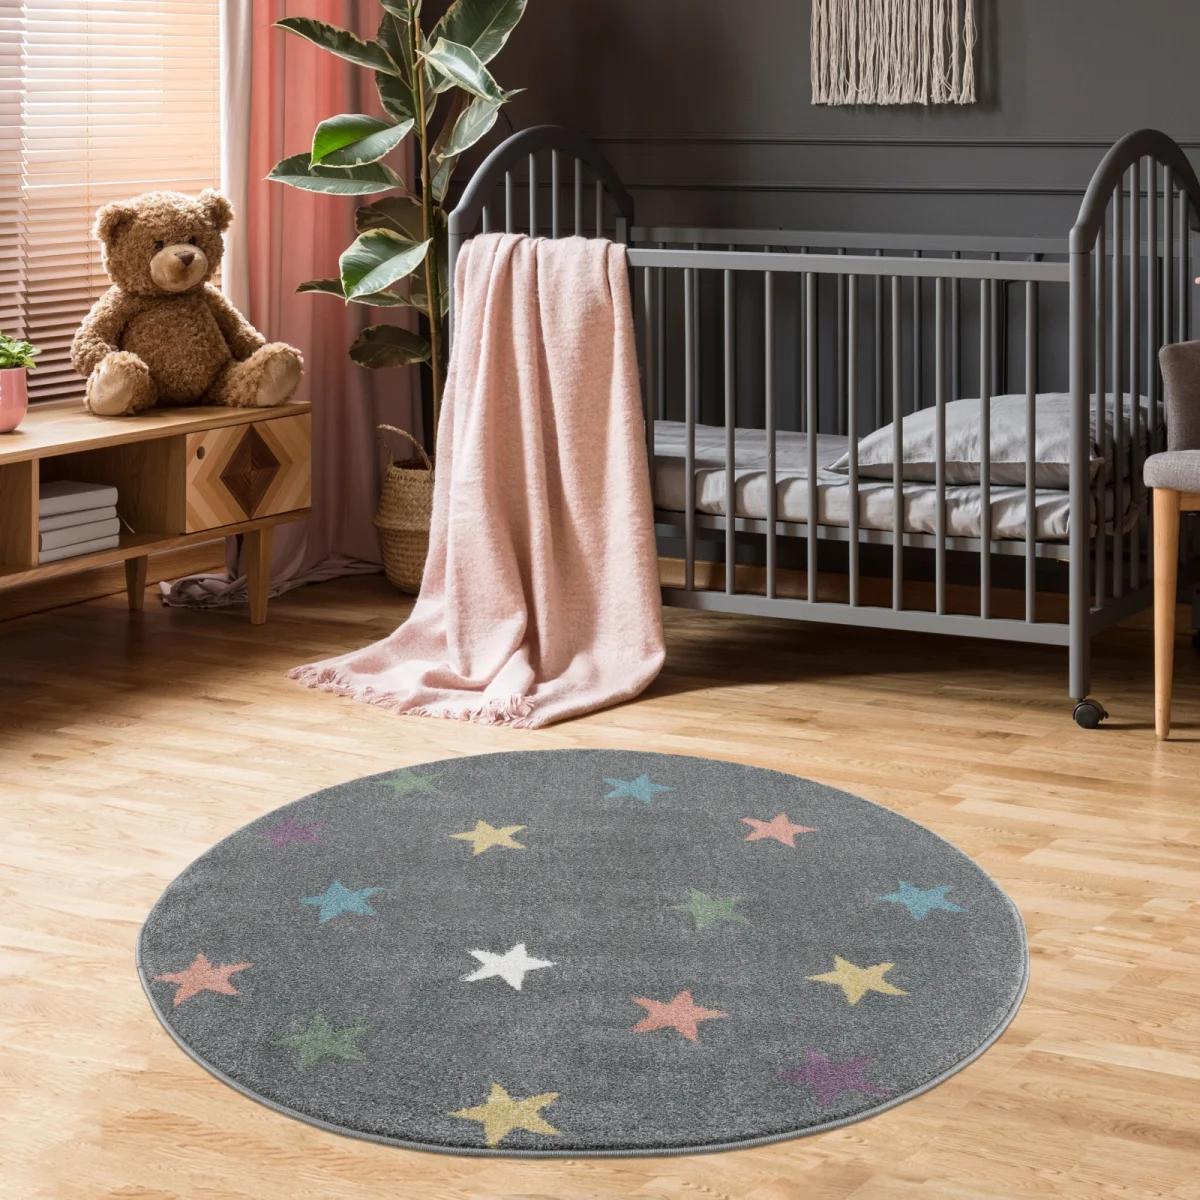 Dywan dziecięcy okrągły Grey Stars Round 133 cm do pokoju dziecięcego szary w gwiazdki nr. 1